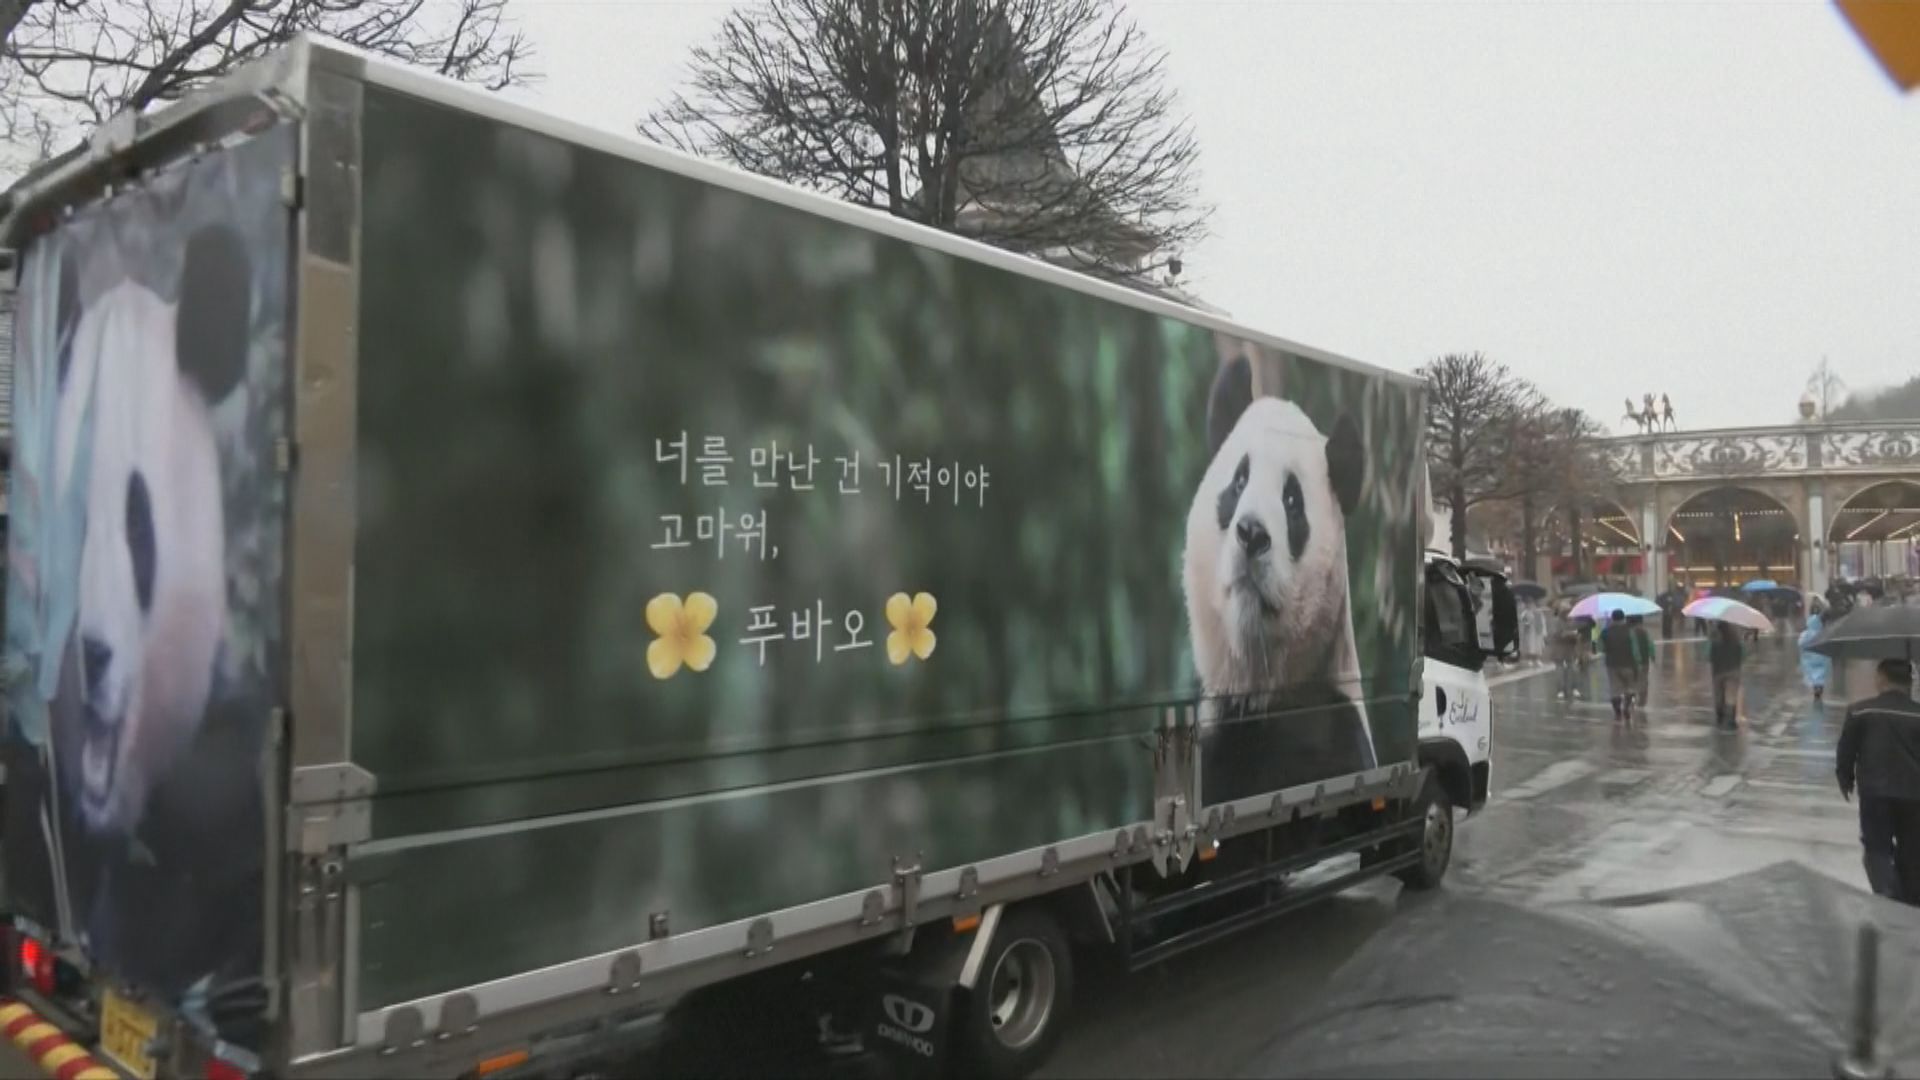 大熊貓福寶由南韓送返中國